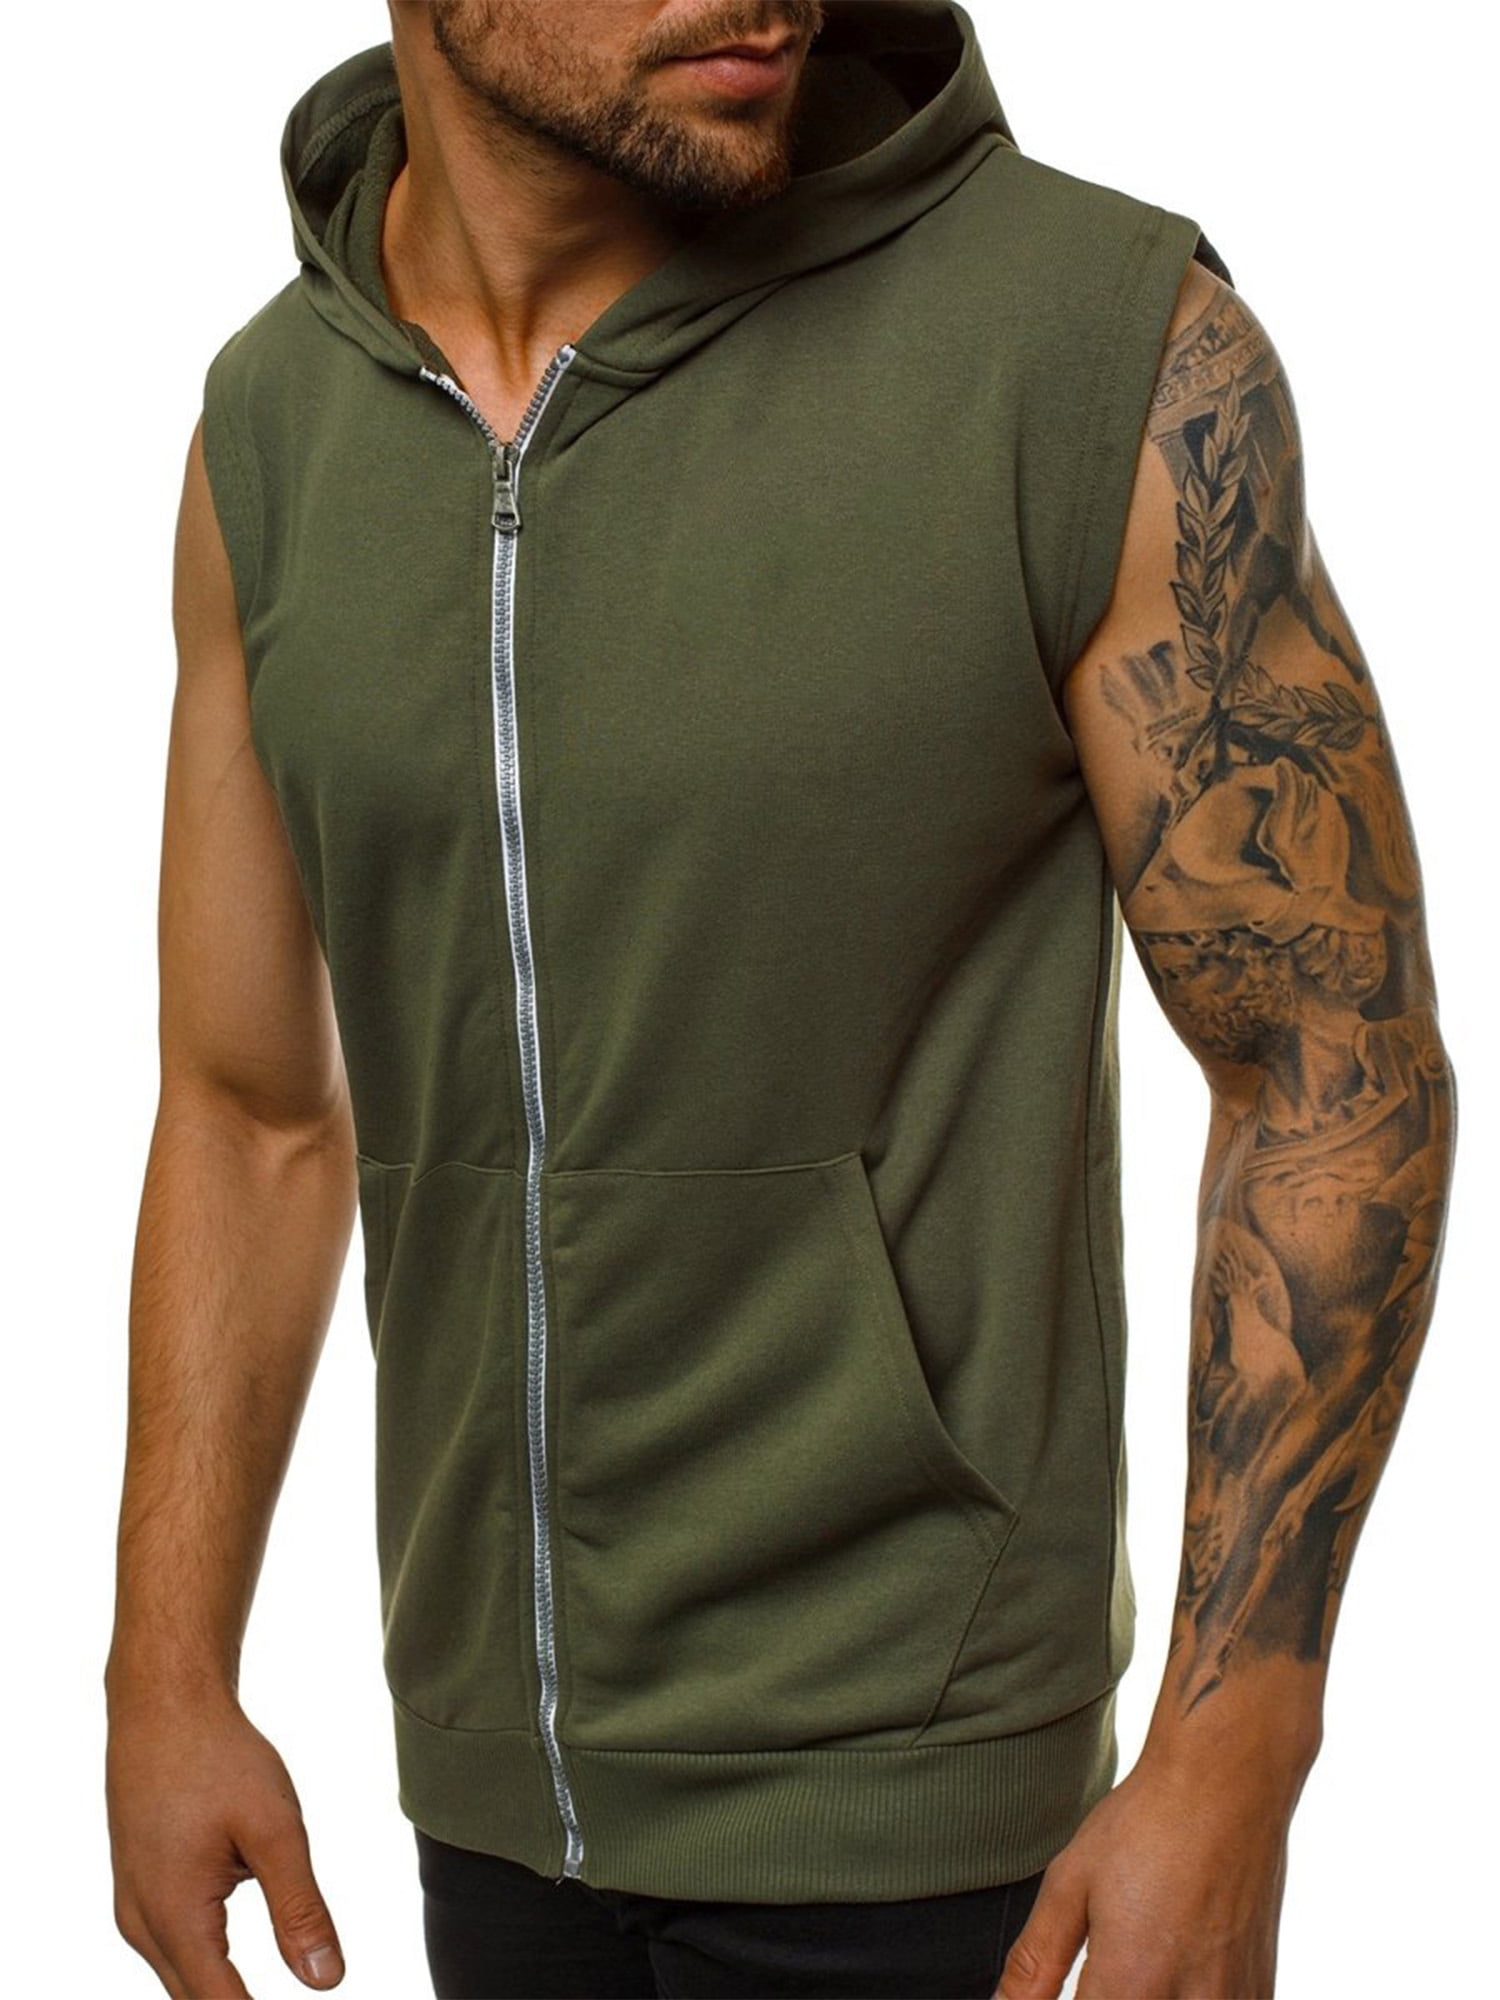 Men's Hooded Oversize Zippered Outdoor Vest Sleeveless Workout Top T-shirt 